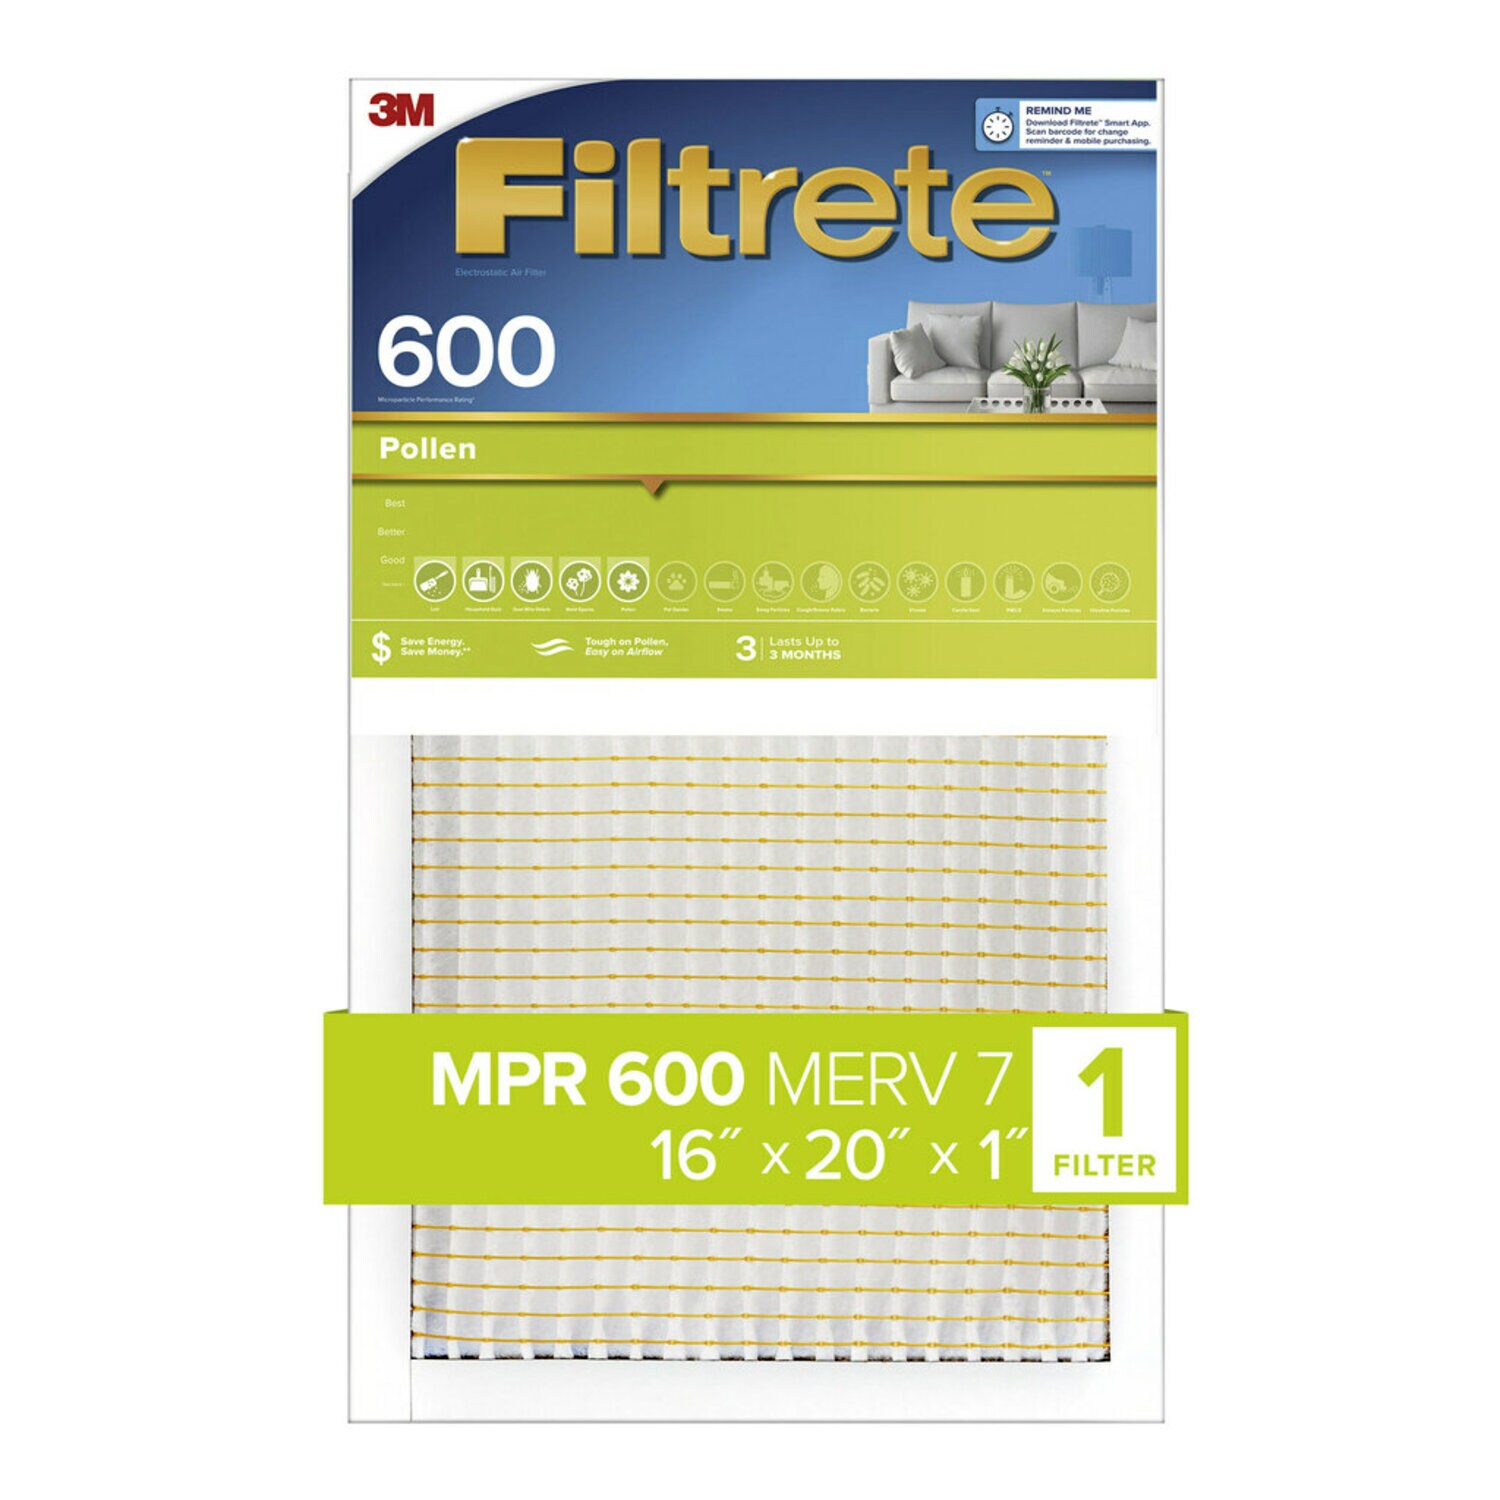 7100182284 - Filtrete Pollen Air Filter, 600 MPR, 9830-4, 16 in x 20 in x 1 in (40.6
cm x 50.8 cm x 2.54 cm)